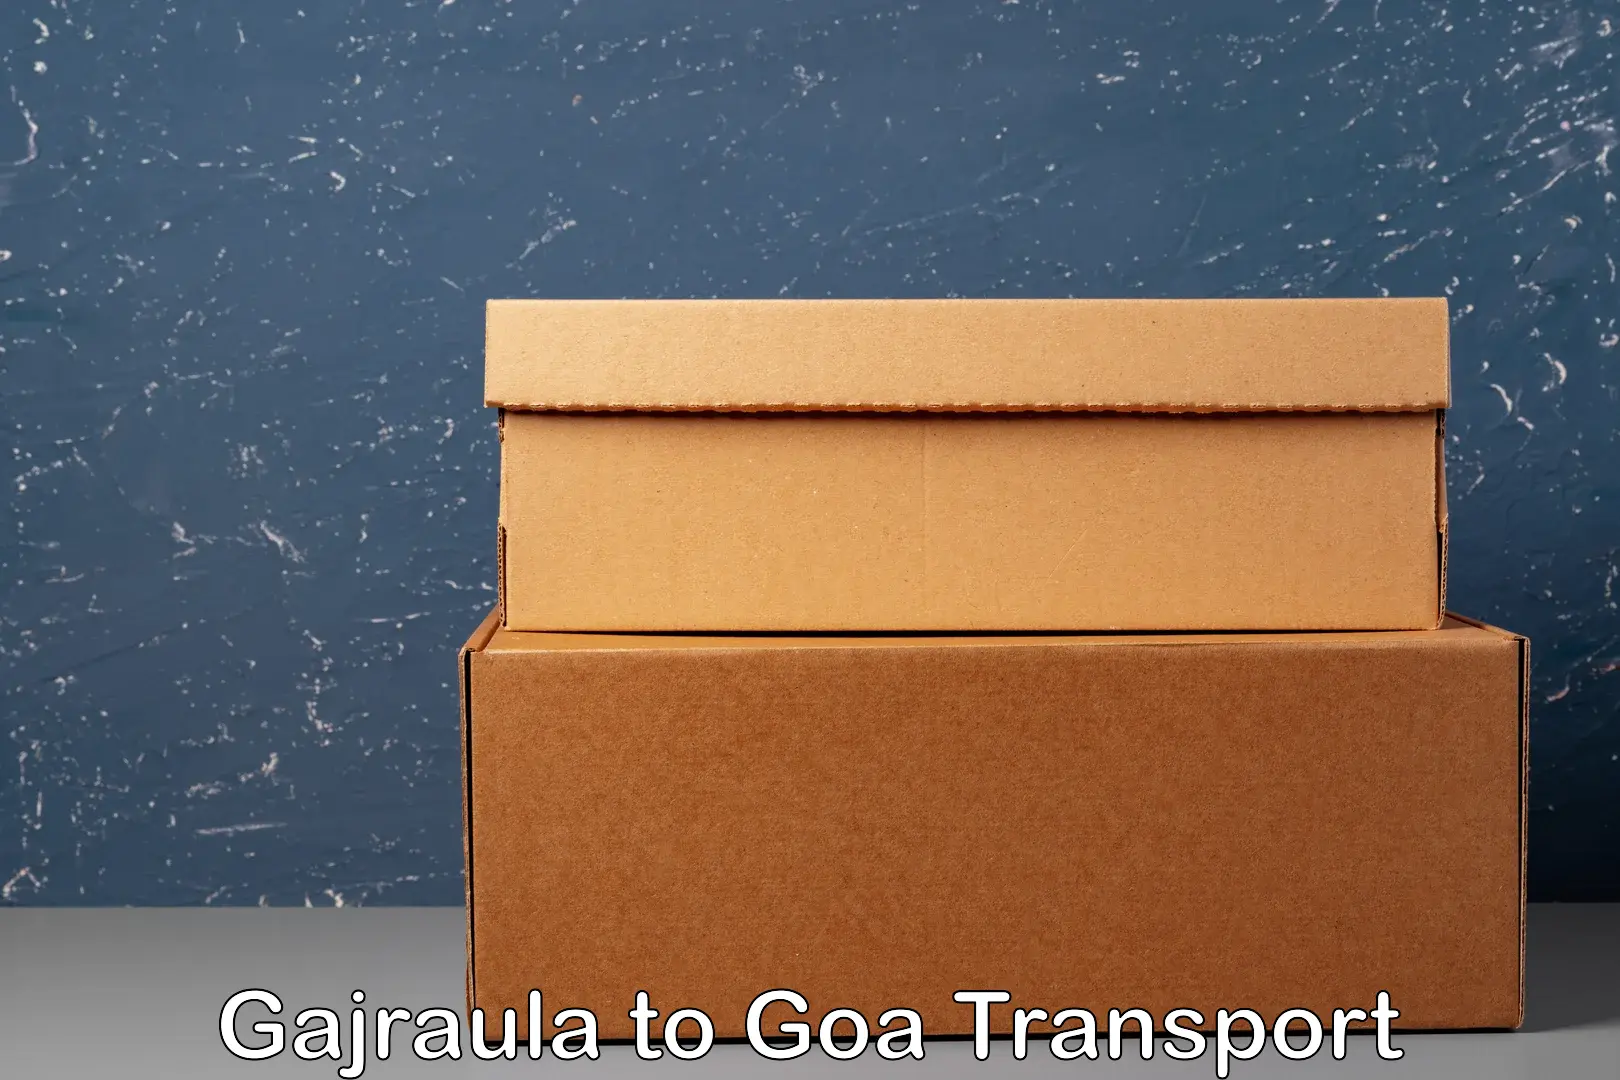 Air cargo transport services Gajraula to Vasco da Gama